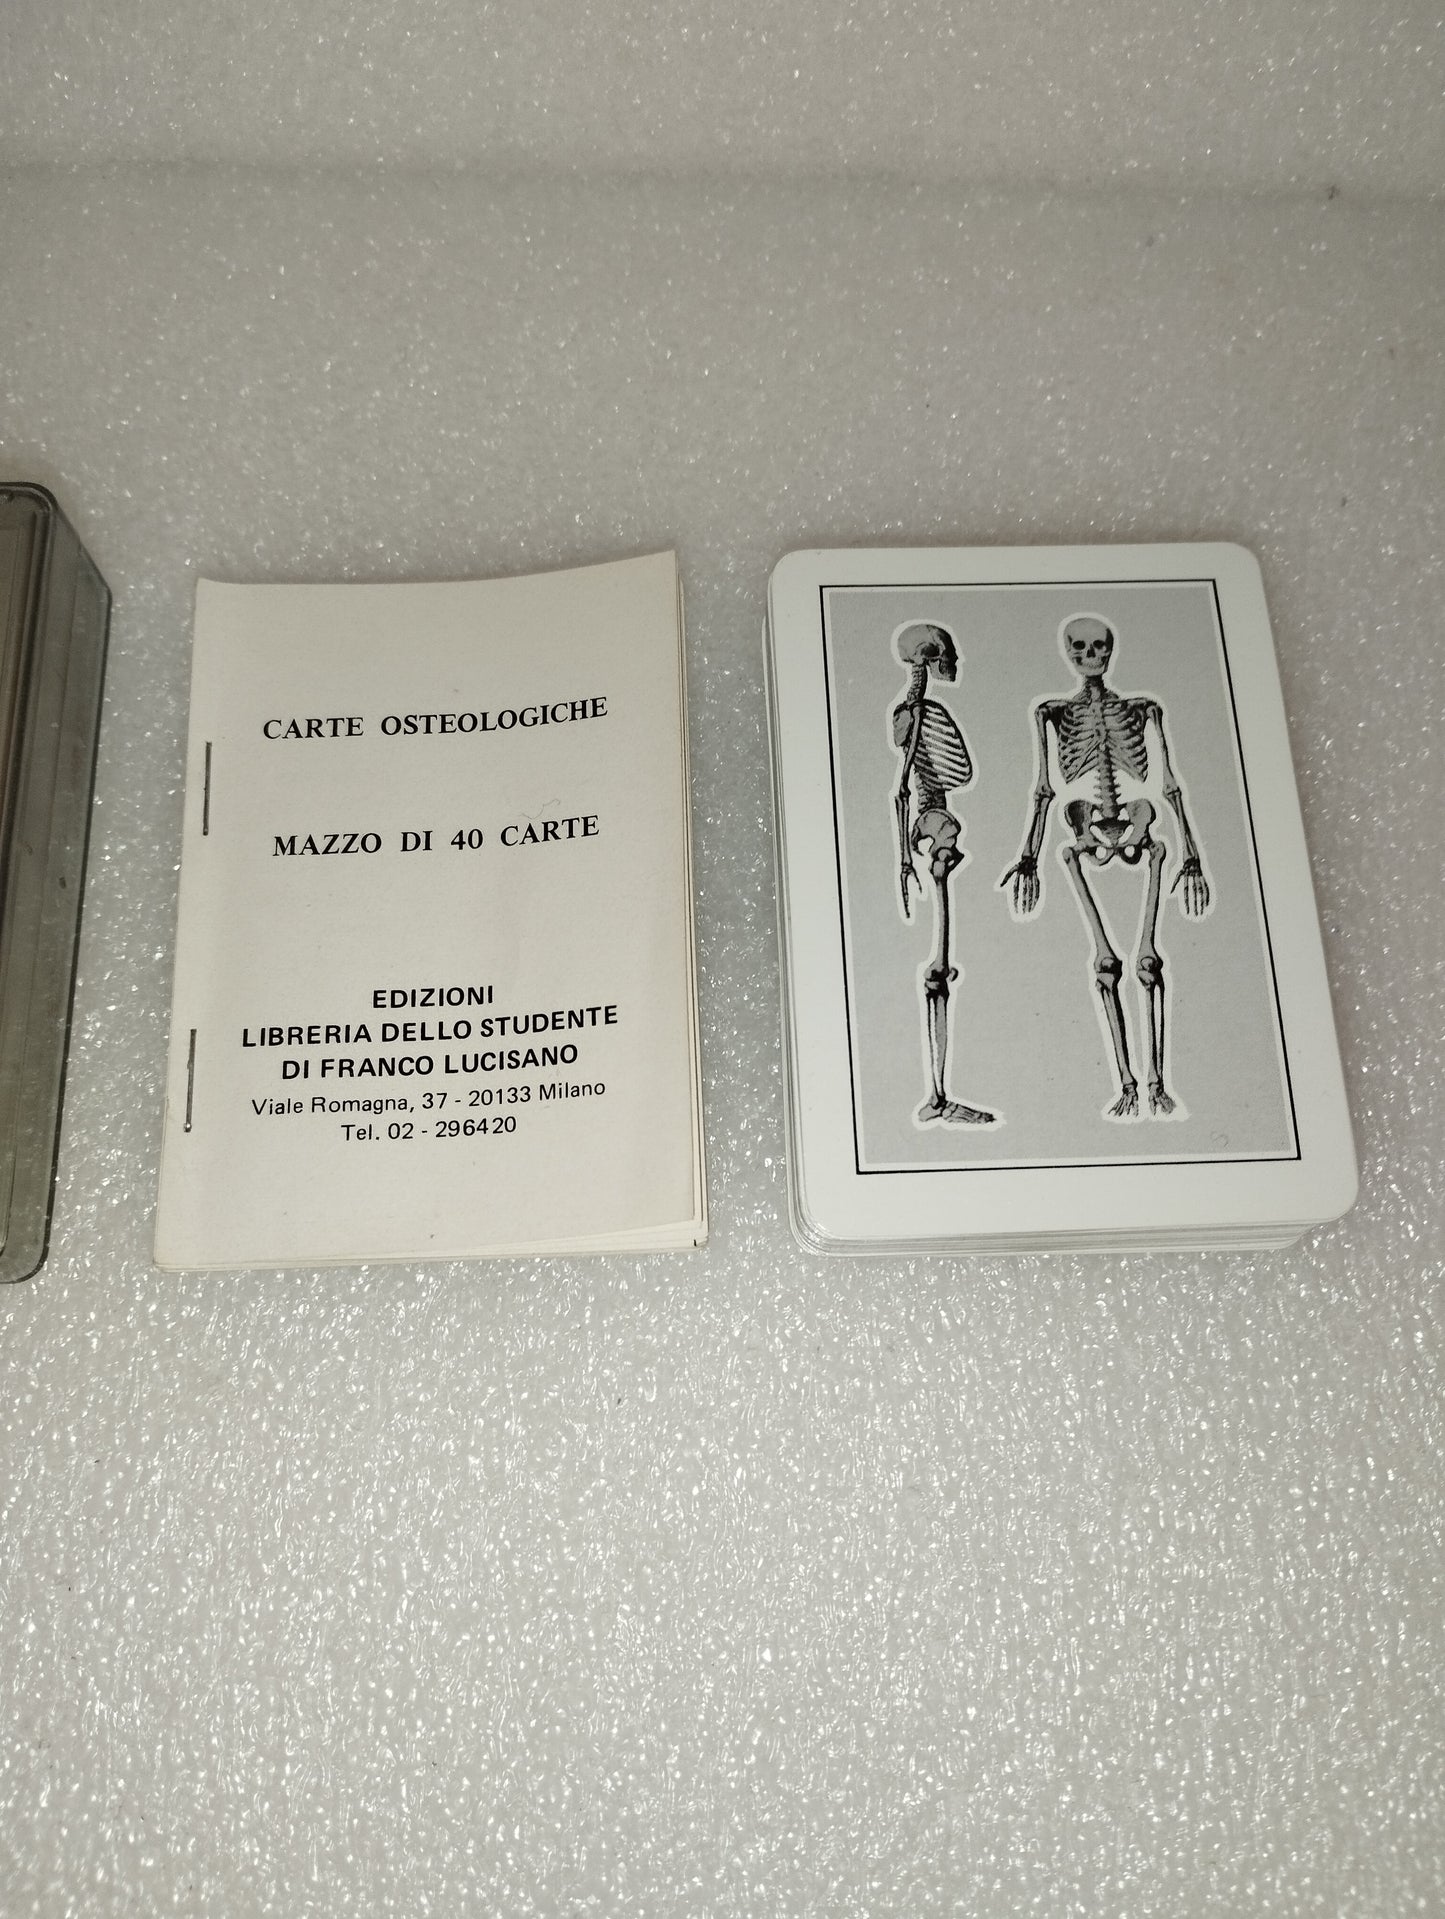 Carte Da Gioco Osteologiche

Edizioni Libreria dello Studente di  Franco Lucisano